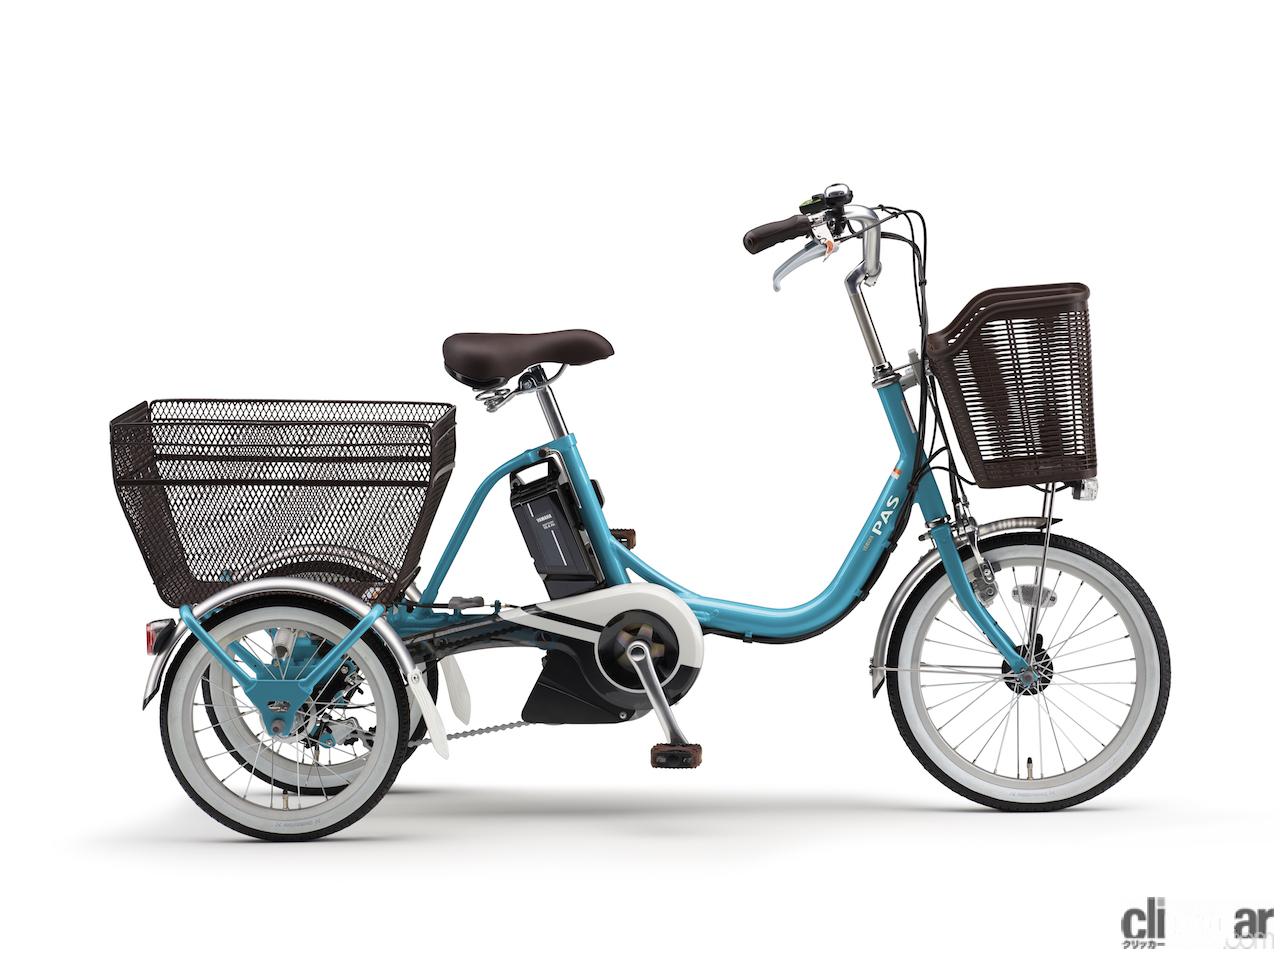 ヤマハの三輪電動アシスト自転車「PAS ワゴン」の2021年モデルは